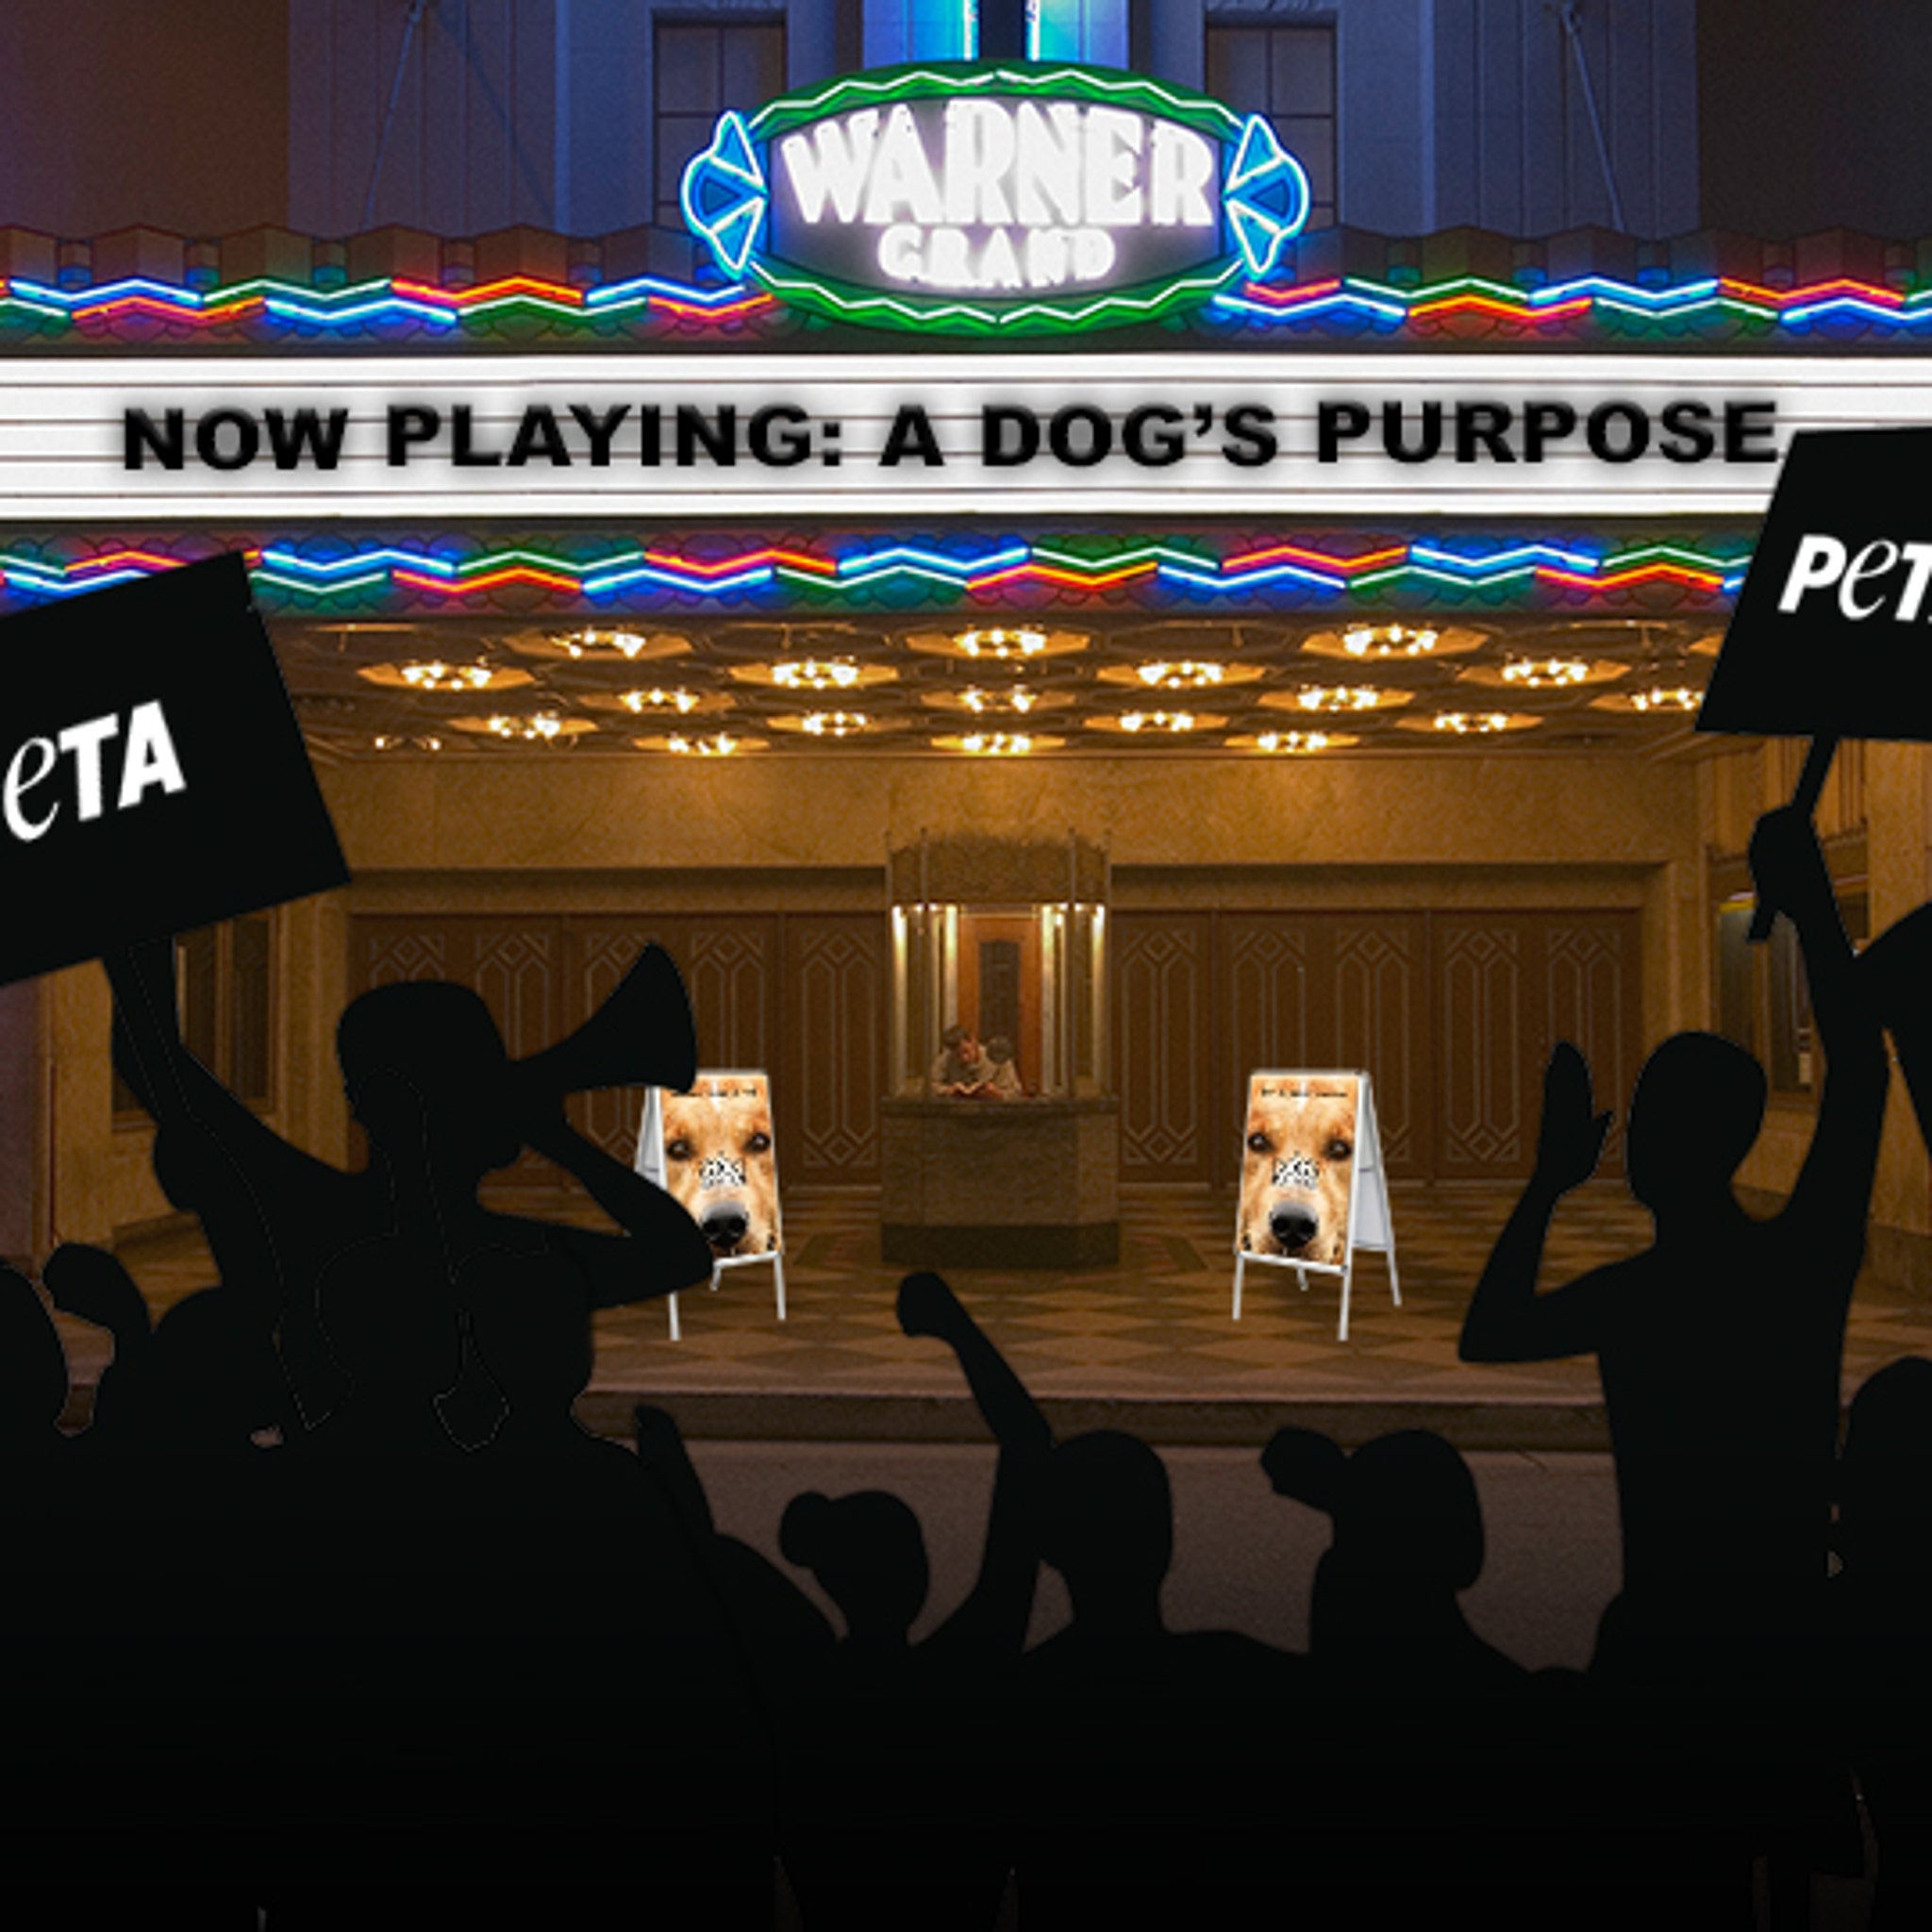 a dogs purpose peta